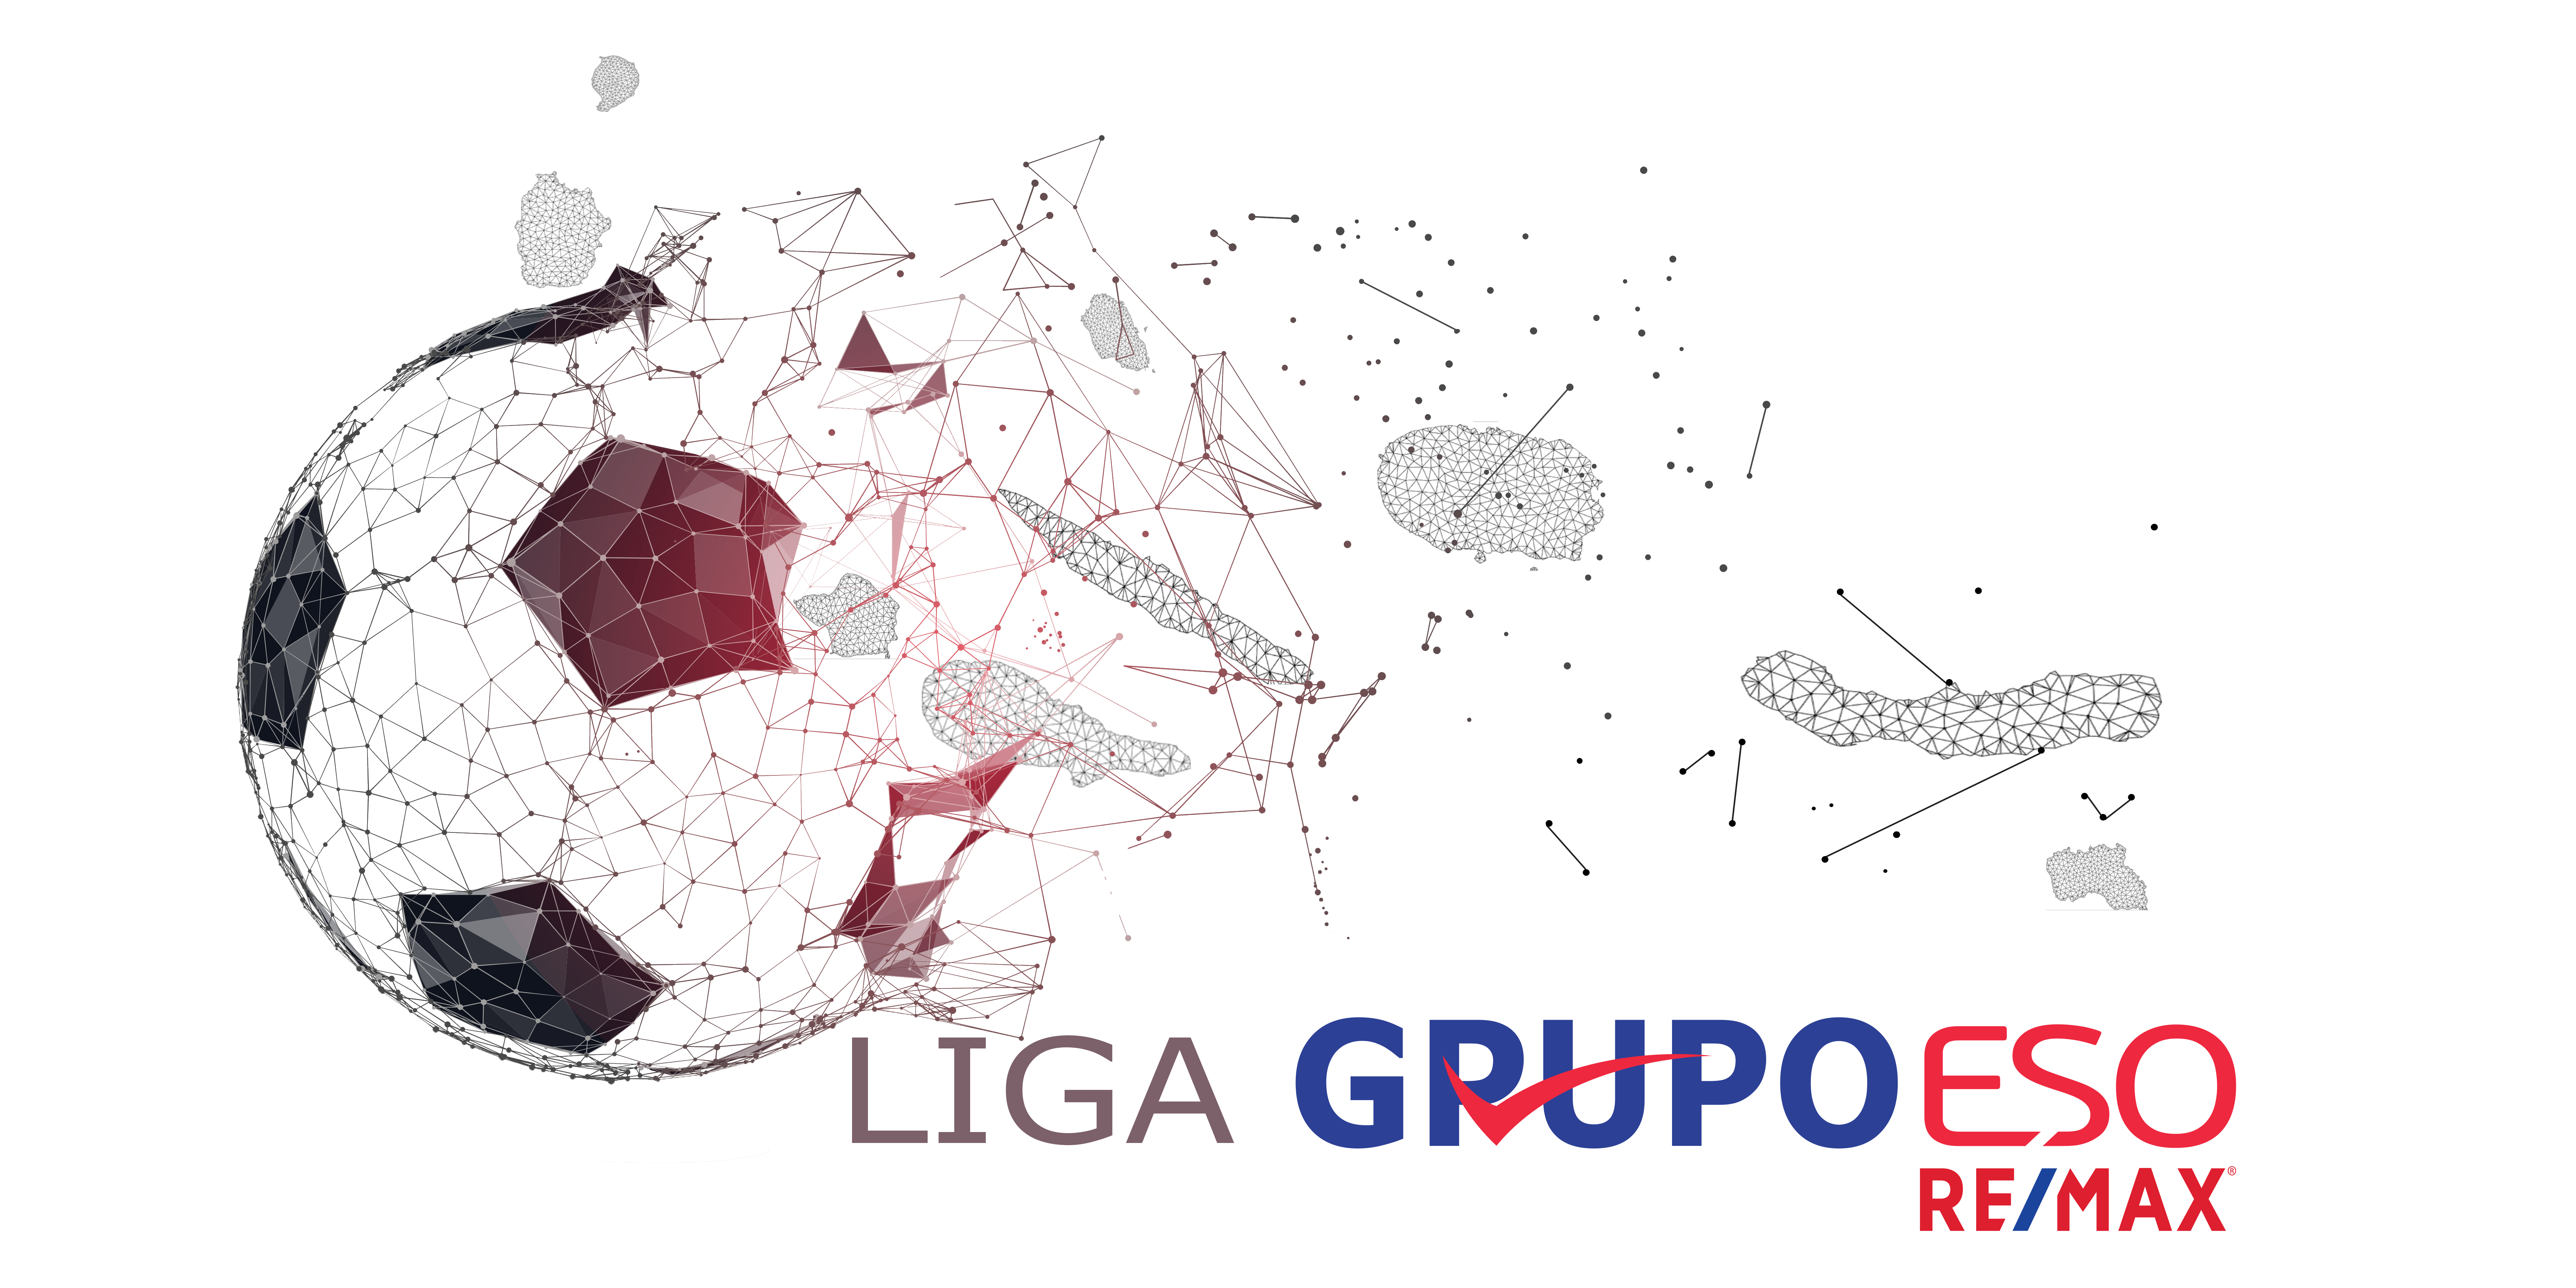 Liga Grupo ESO RE/MAX - Futebol Seniores | 2ª Fase - 2ª Jornada - Grupo de Promoção e Despromoção